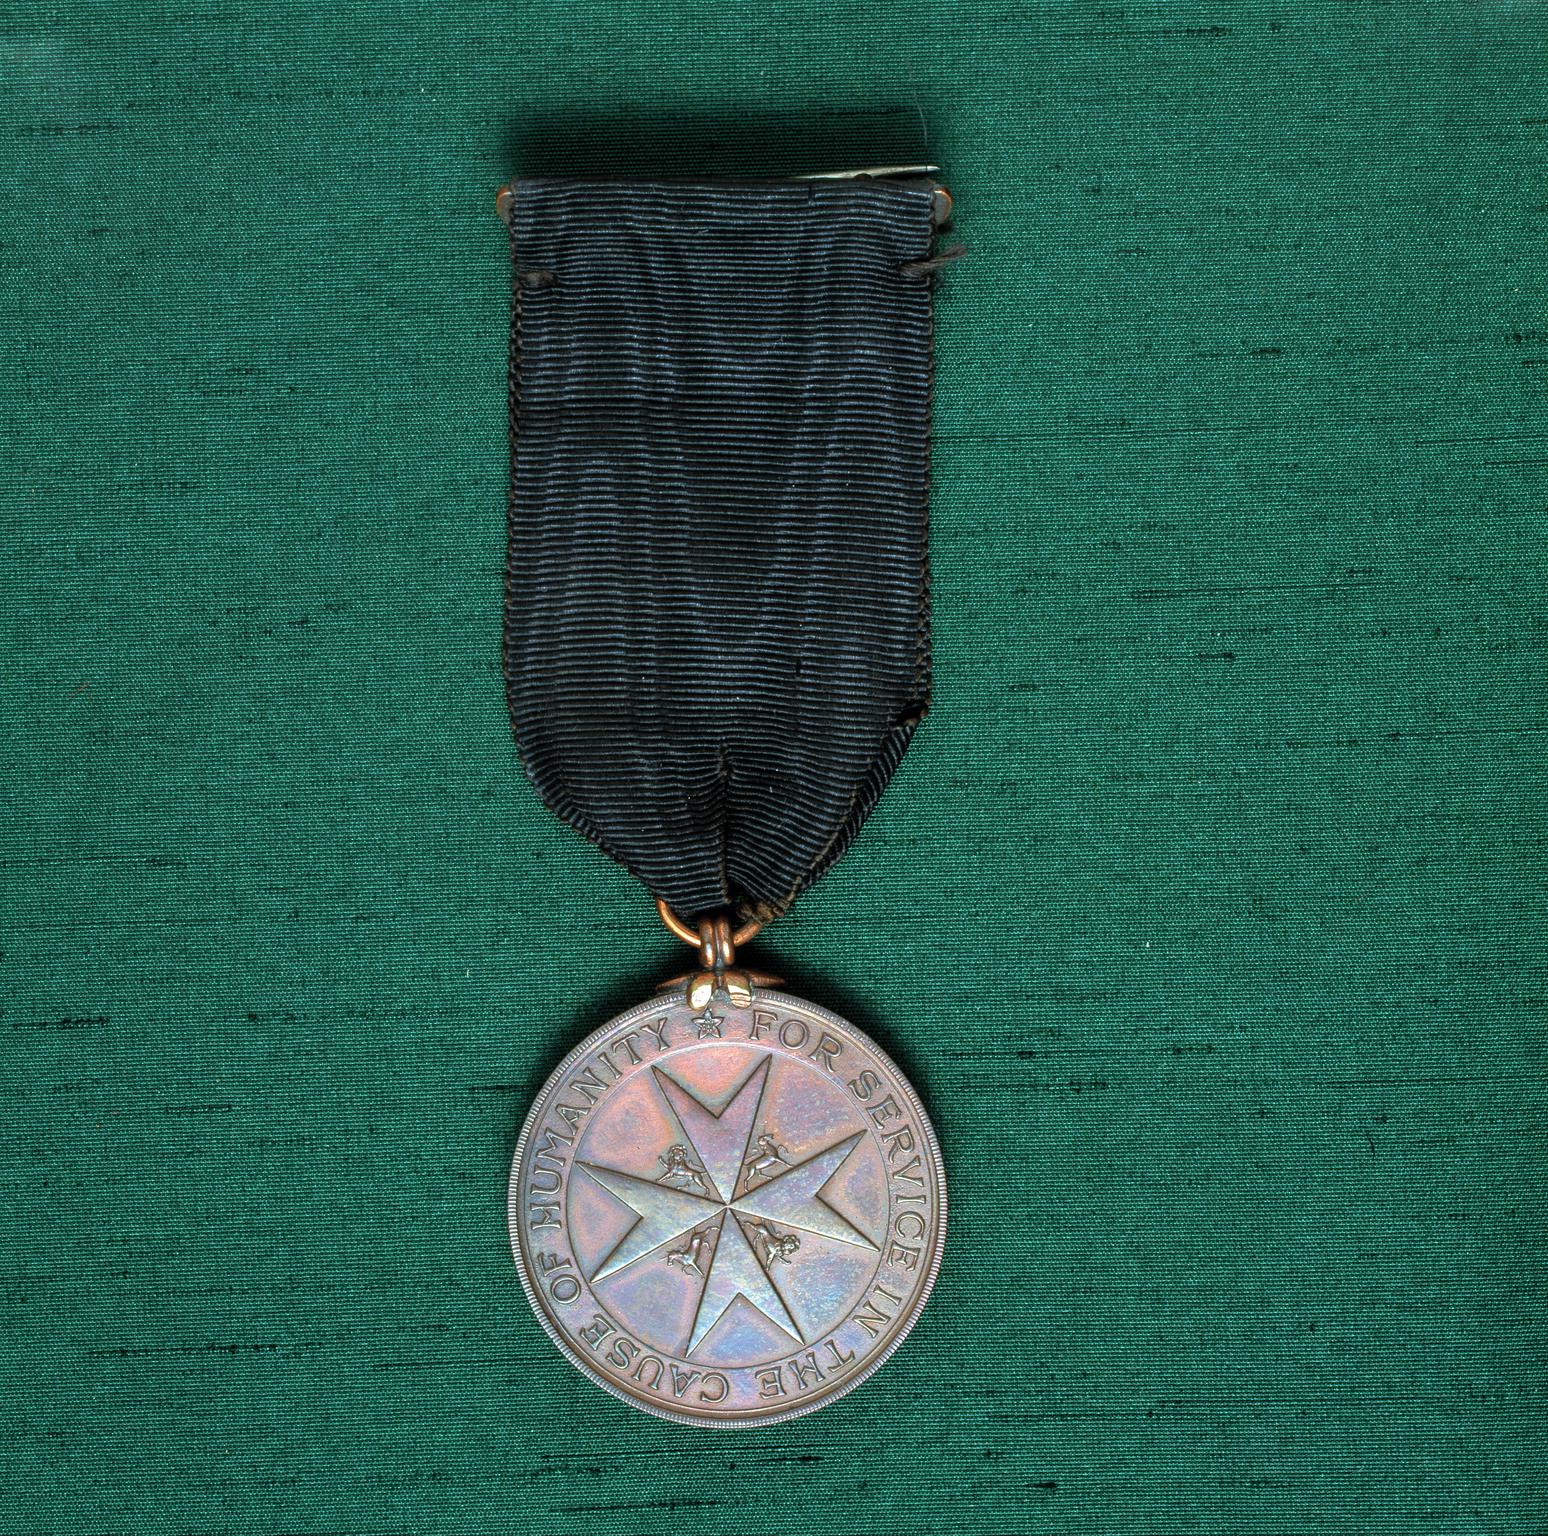 St. John's medal